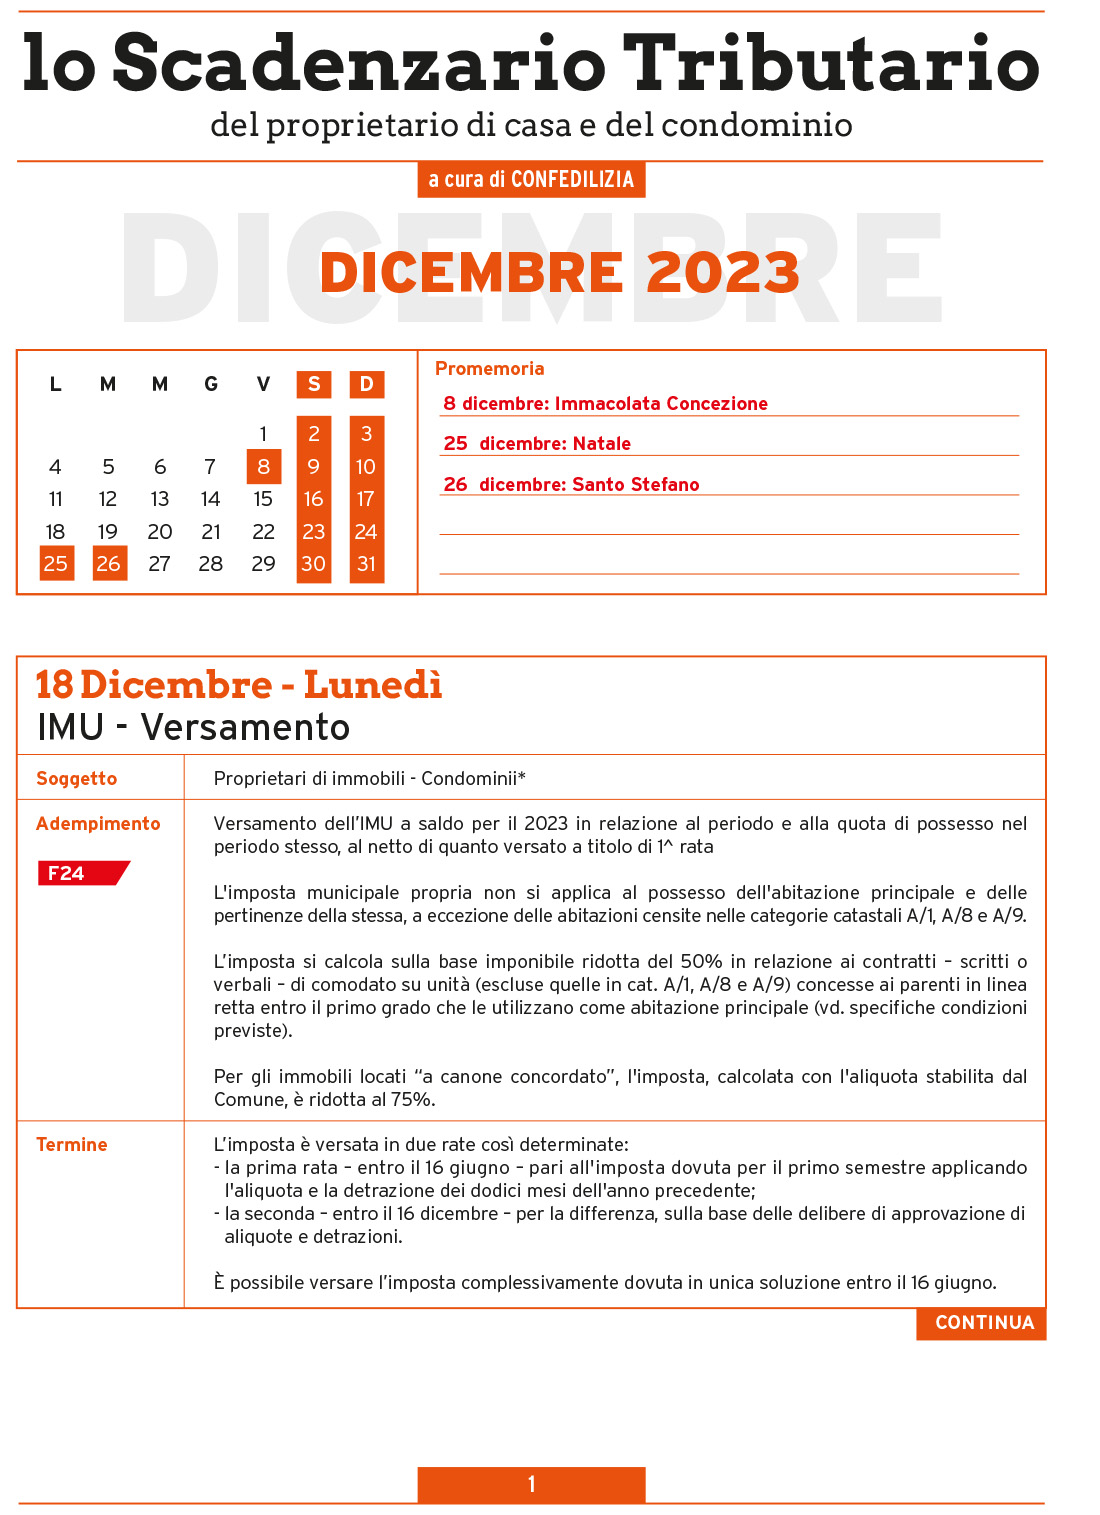 SCADENZARIO TRIBUTARIO DICEMBRE 2023 (9 pagg.)-1